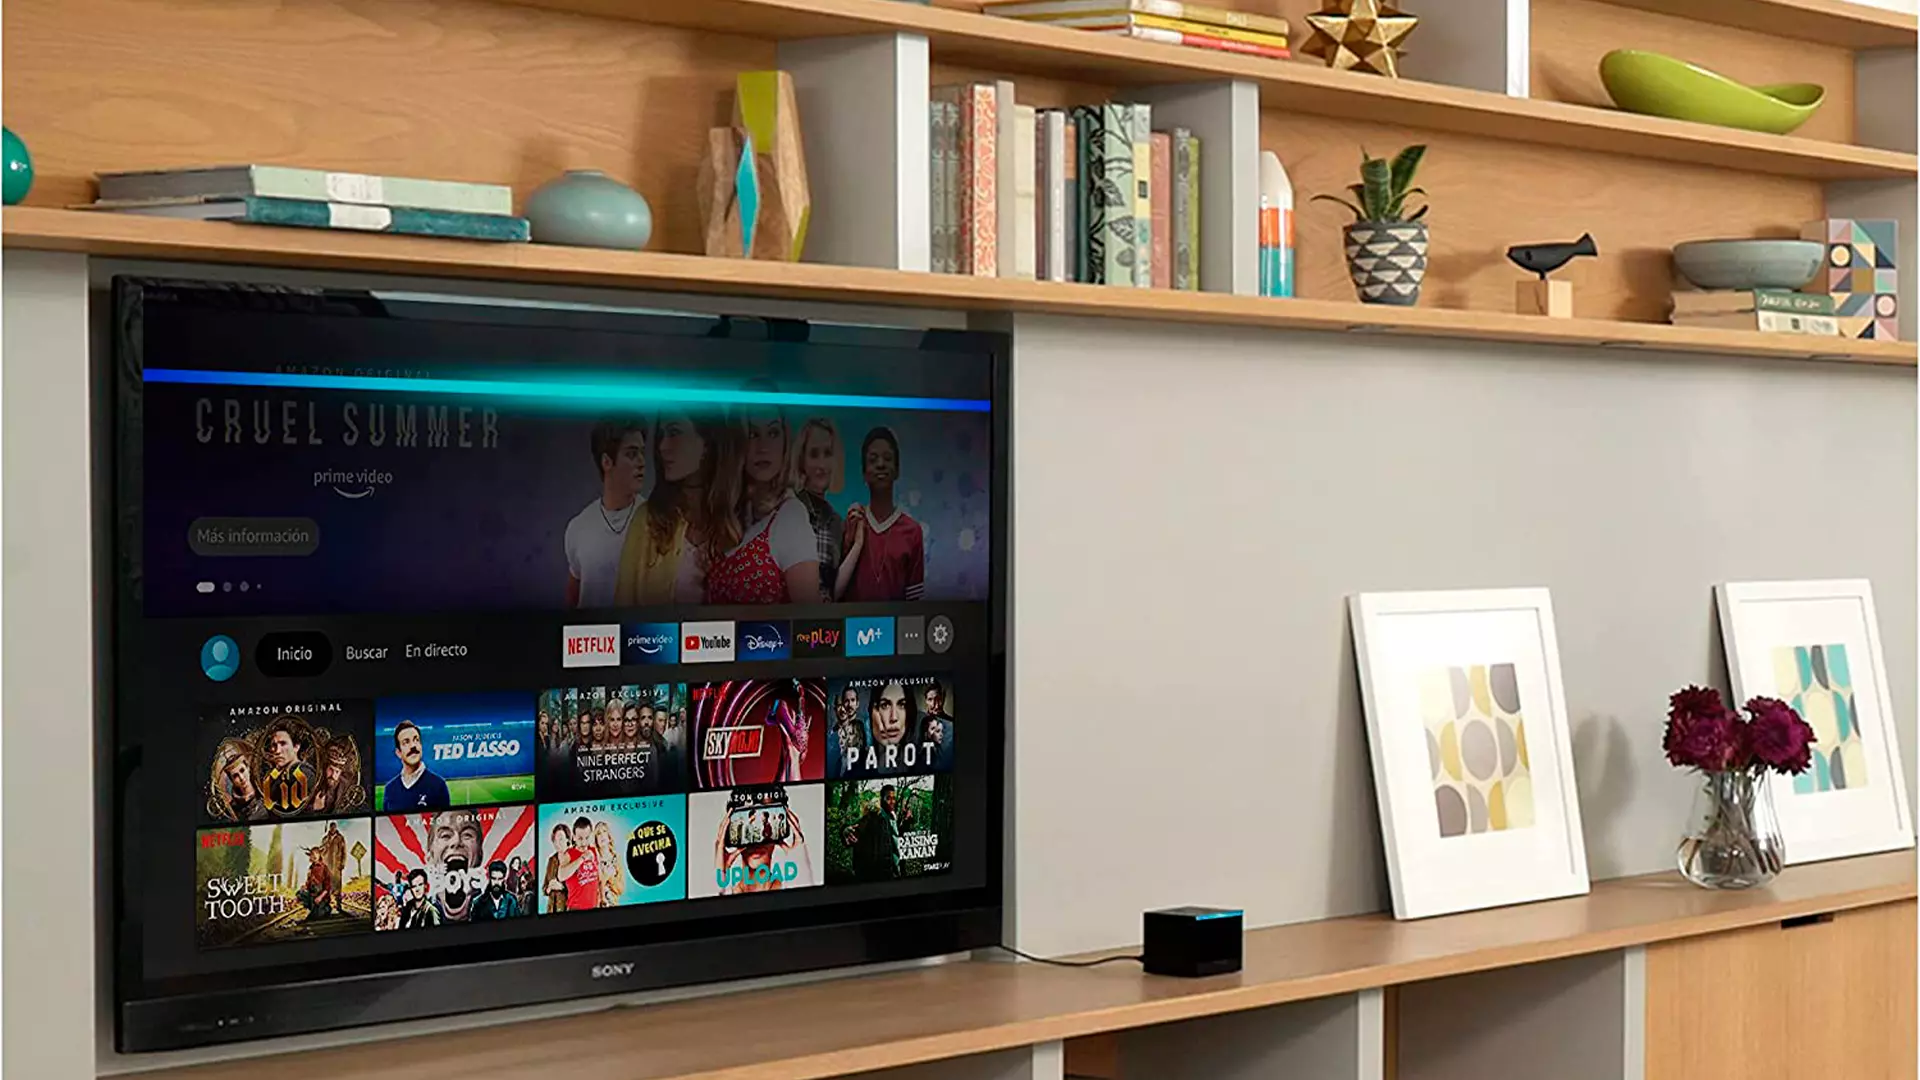 Por fin el Fire TV Cube a precio asequible, Fire TV con Alexa todo en uno